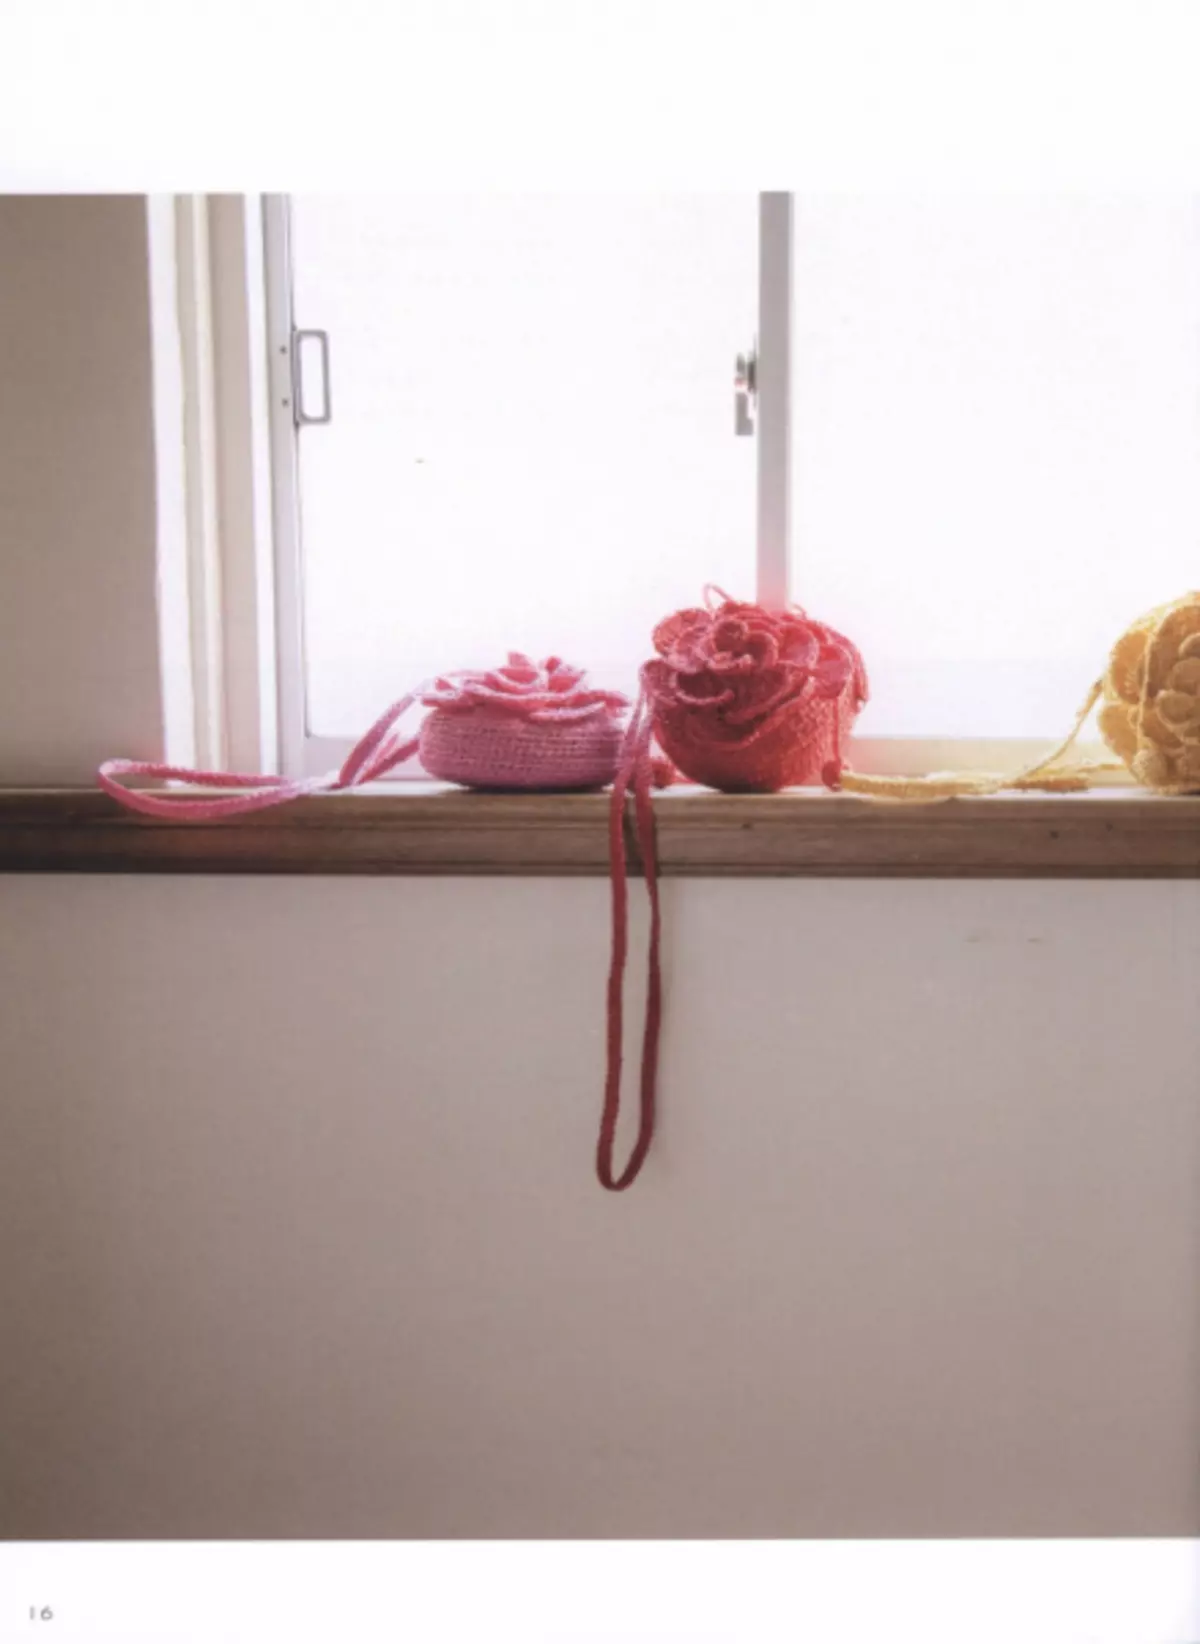 ਬੁਣੇ ਹੋਏ ਬੈਗ. Crochet Mania ਦੇ ਬੈਗ ਰਸਾਲੇ